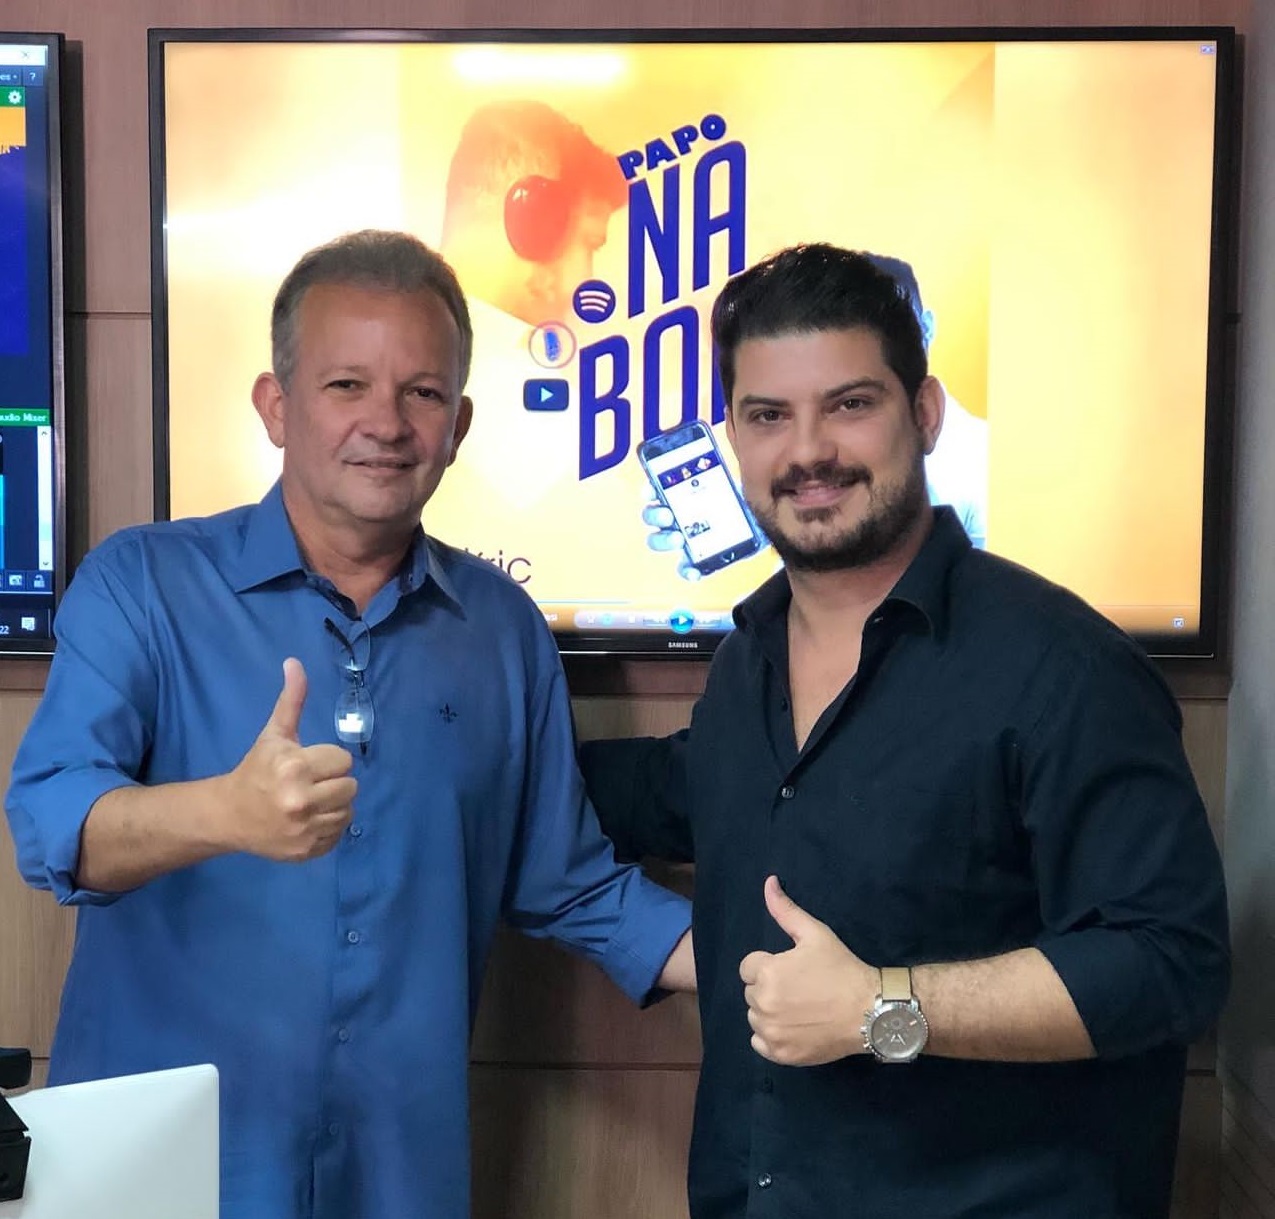 Eric Moreira comanda o podcast “Papo Na Boa” e entrevista importantes personalidades cearenses